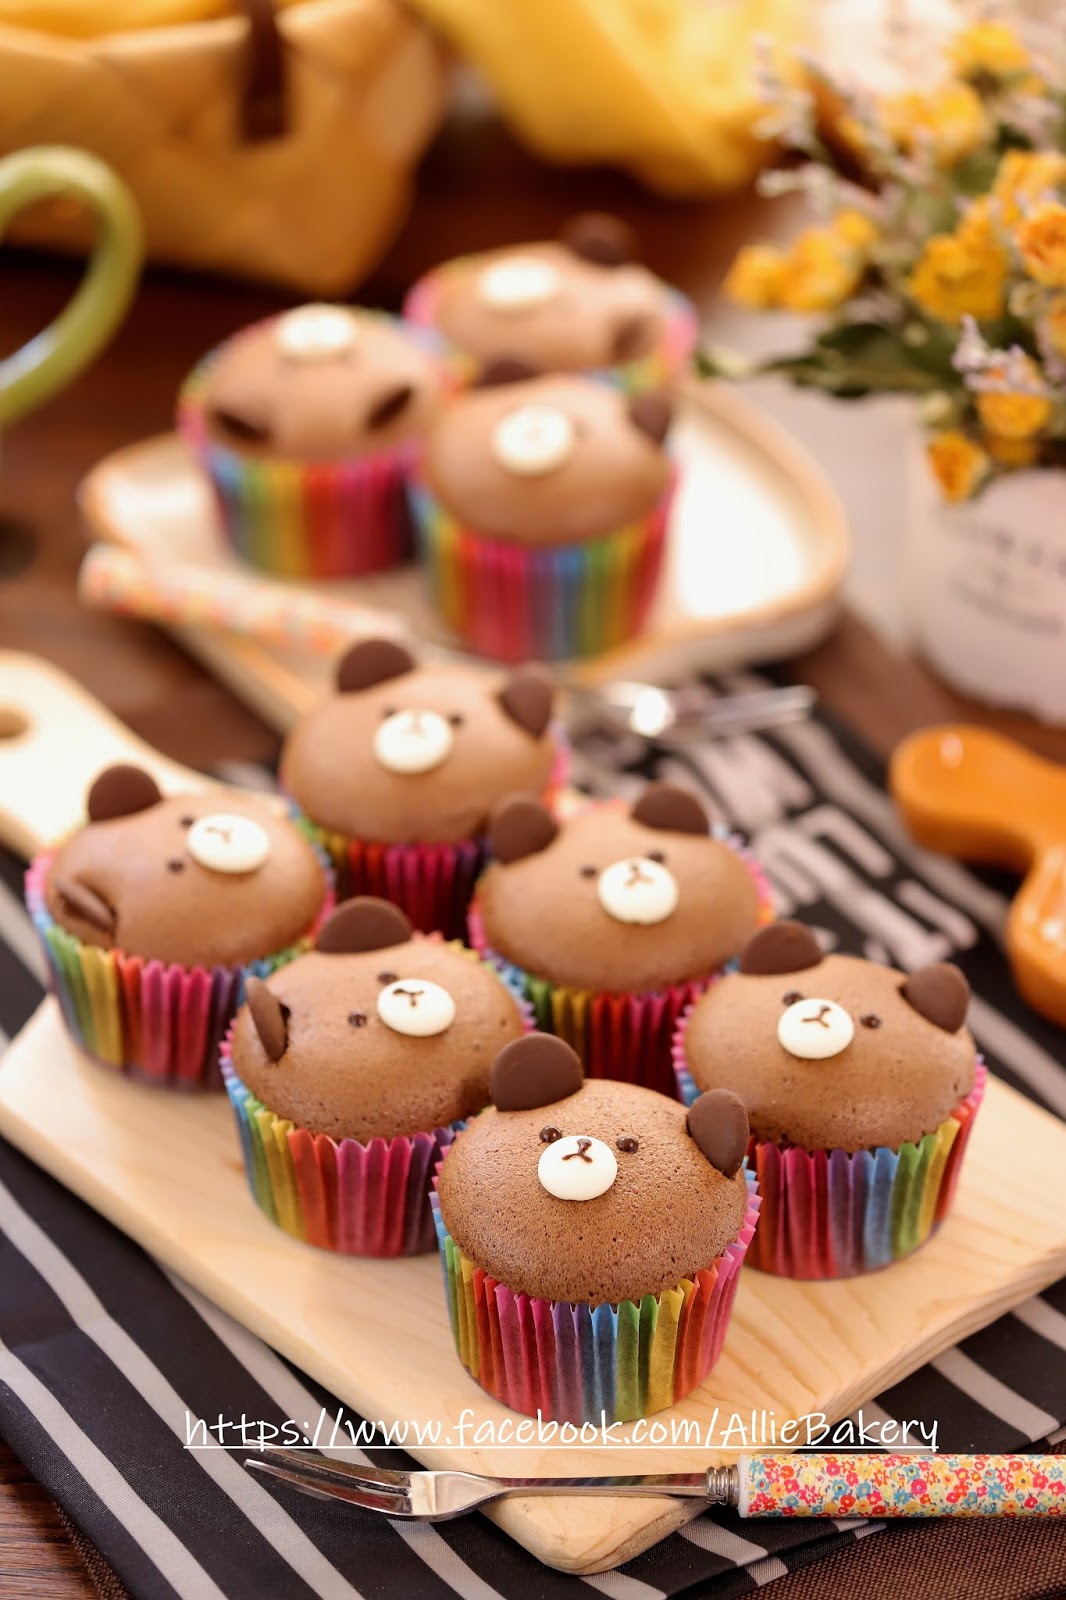 Tho's Dreams: Duffy甜品教室: 製作可愛的迪士尼小熊蛋糕!